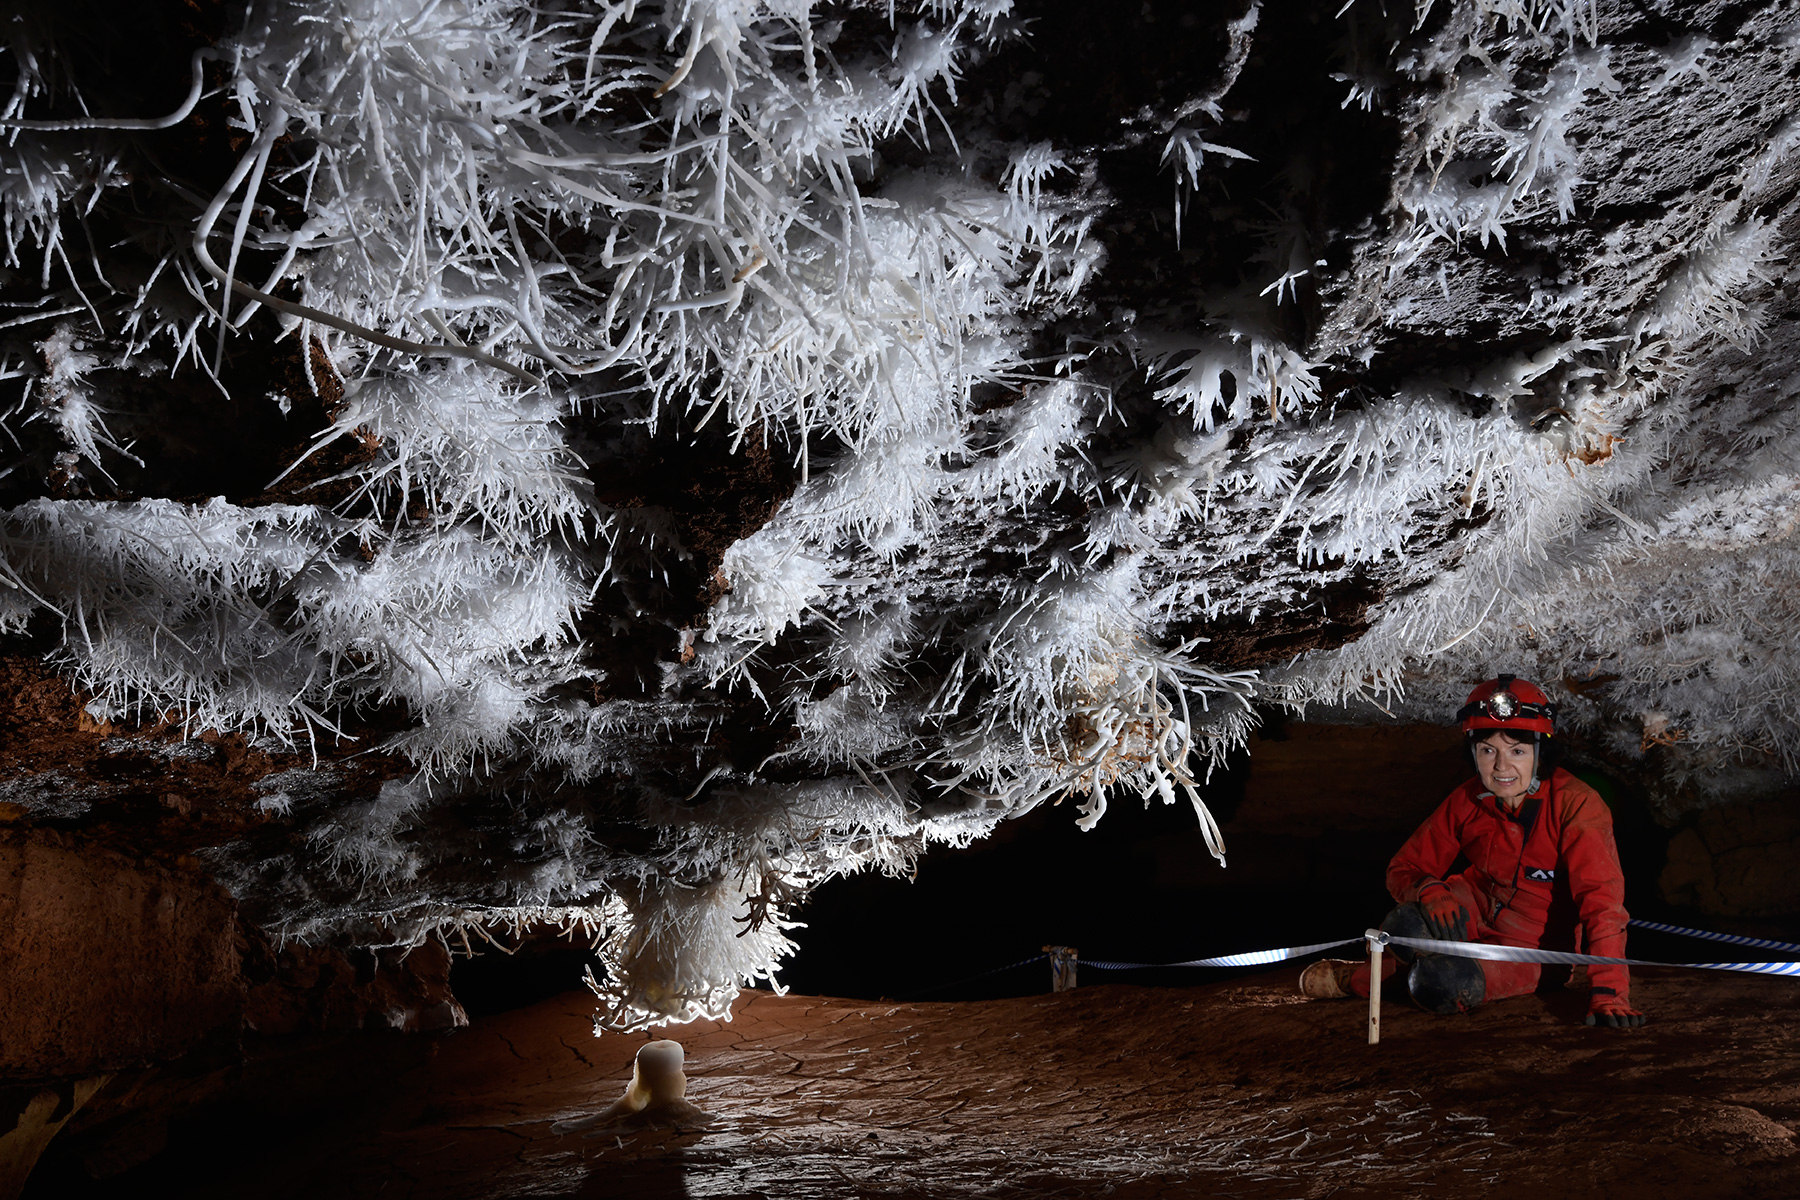 Breezeaway Cave (USA - Colorado) - Salle basse avec plafond couvert de concrétions d'aragonite blanches (spéléo sur le côté)